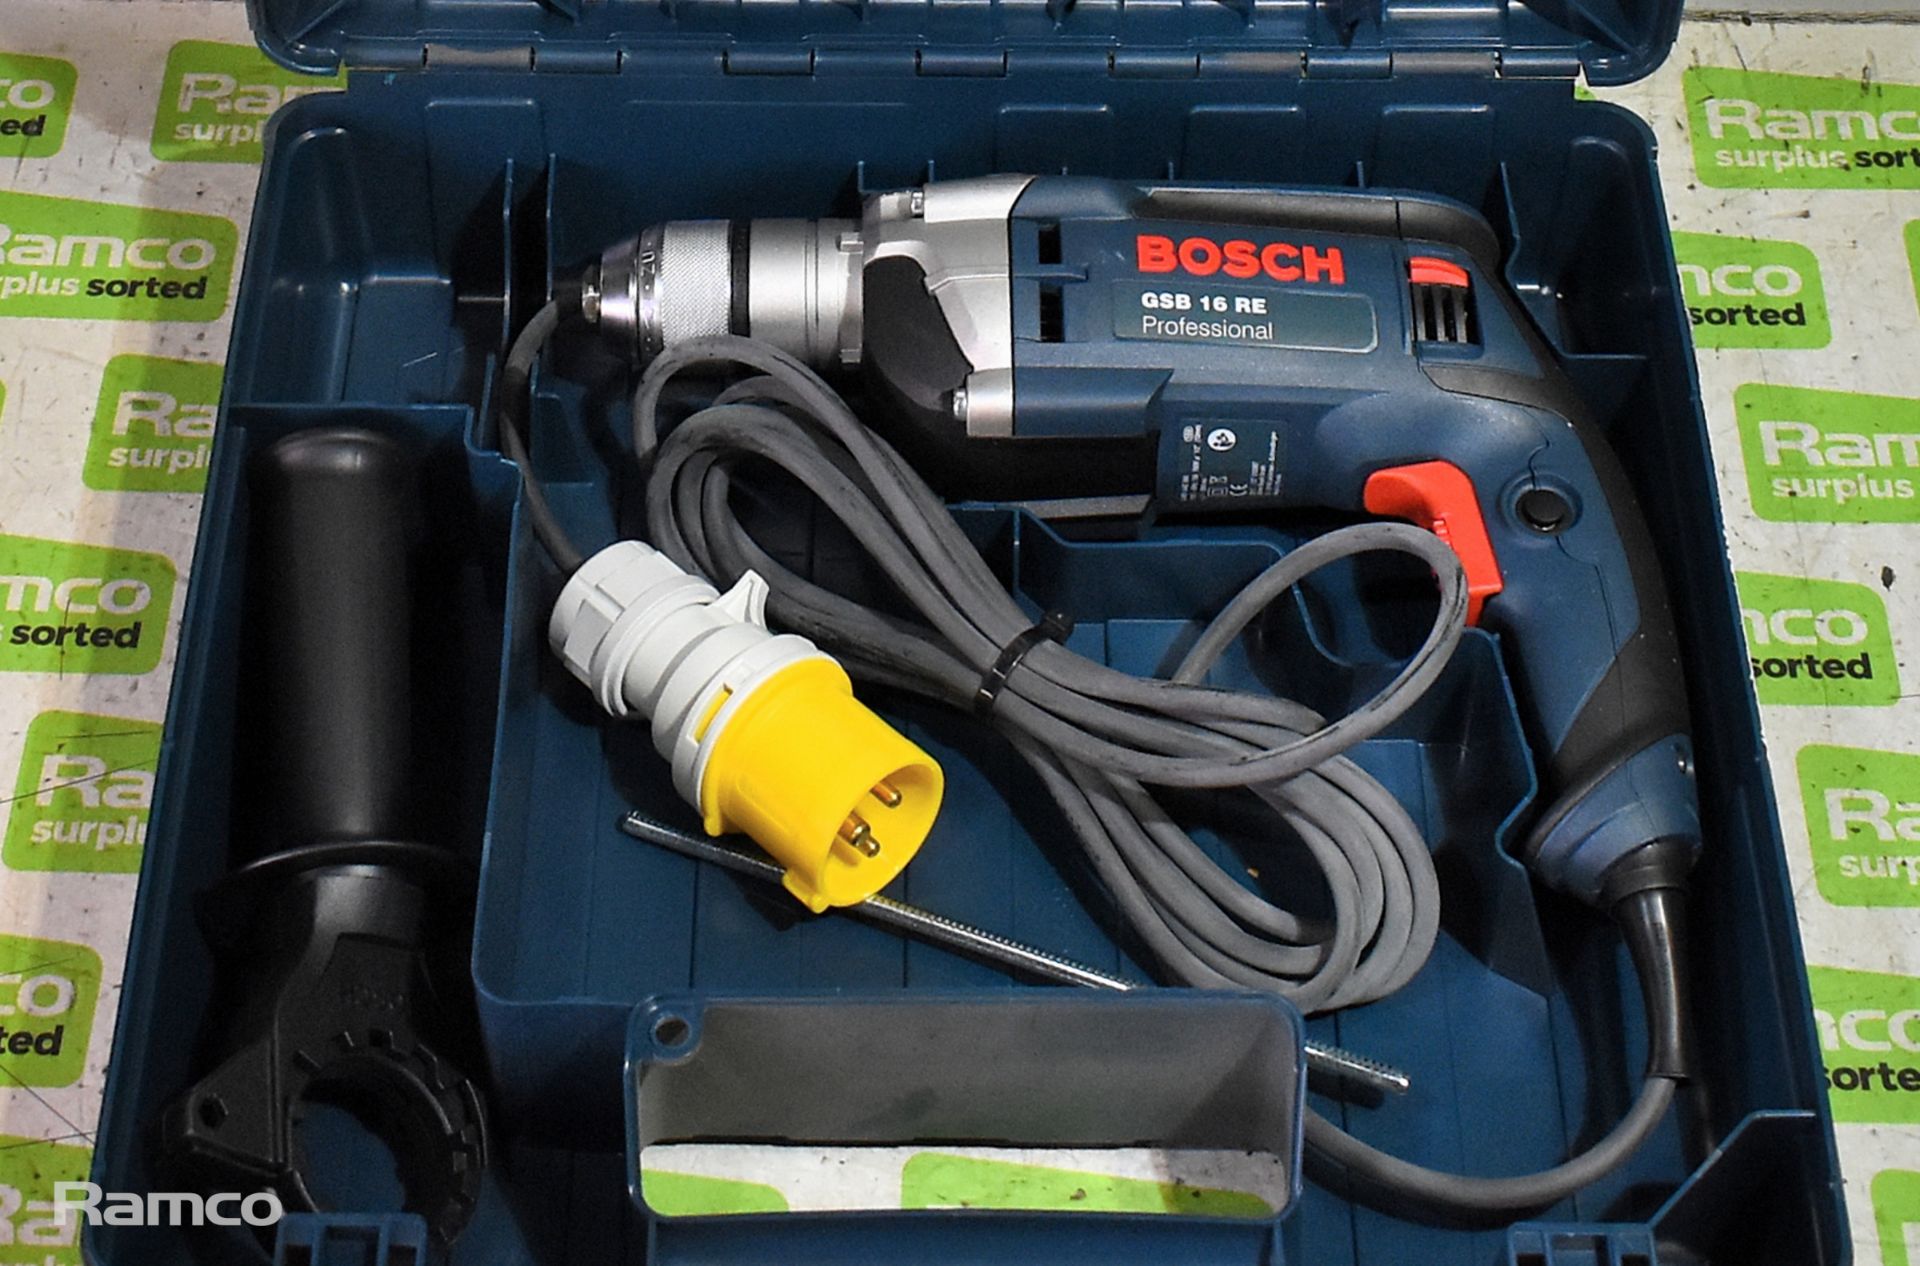 Bosch GSB 16 RE 110V electric drill with storage case - Bild 2 aus 6